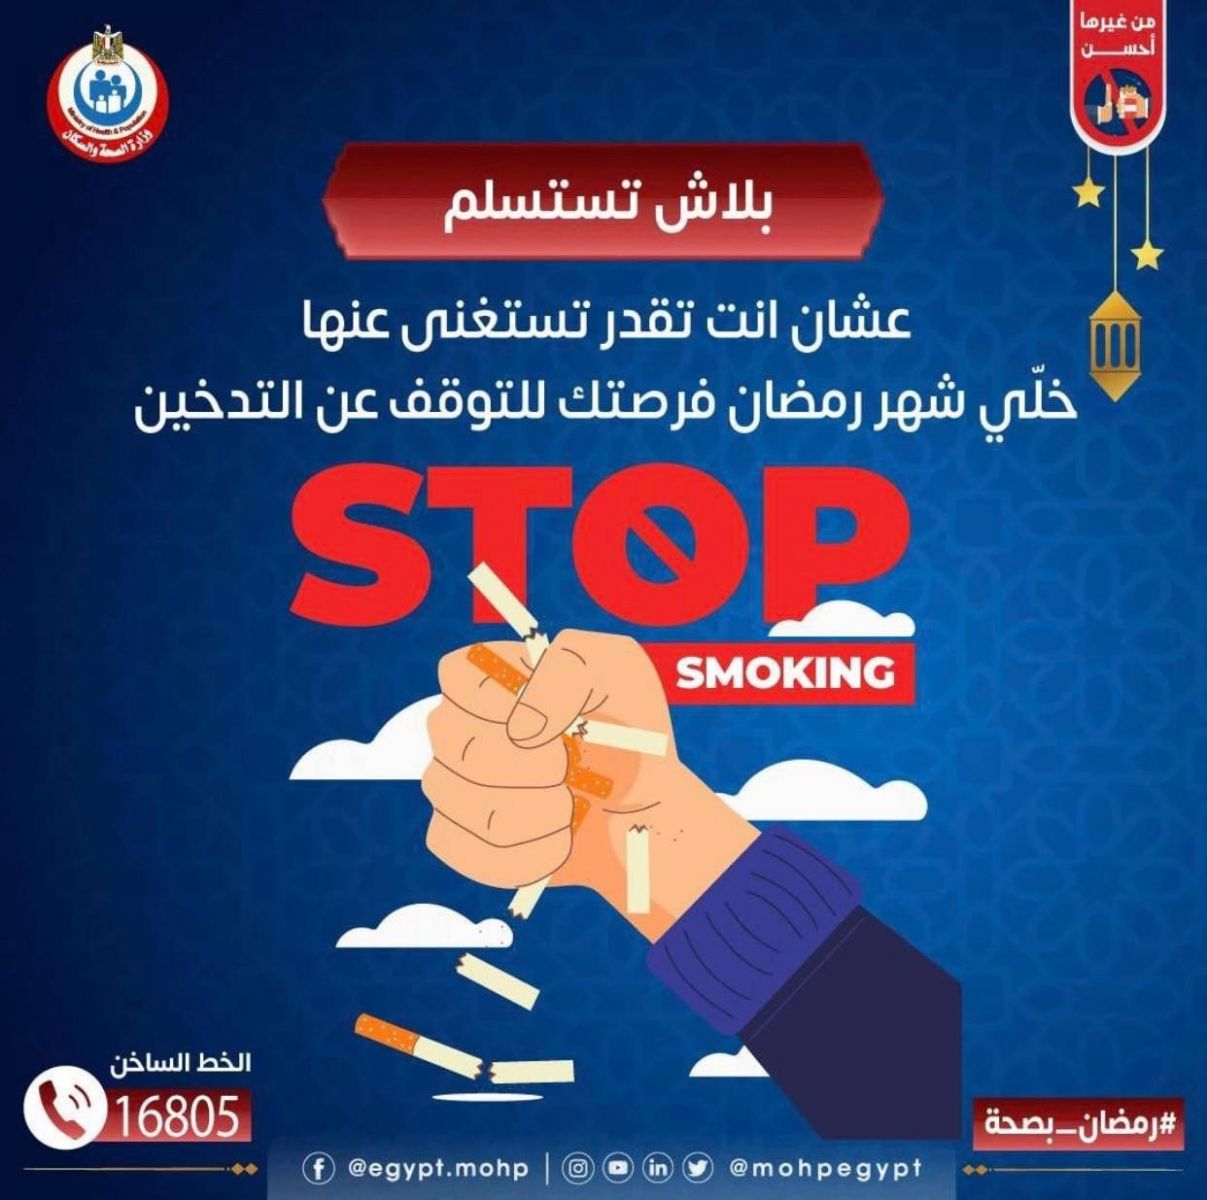 وزارة الصحة تساعد المدخنين في الإقلاع عن التدخين في رمضان